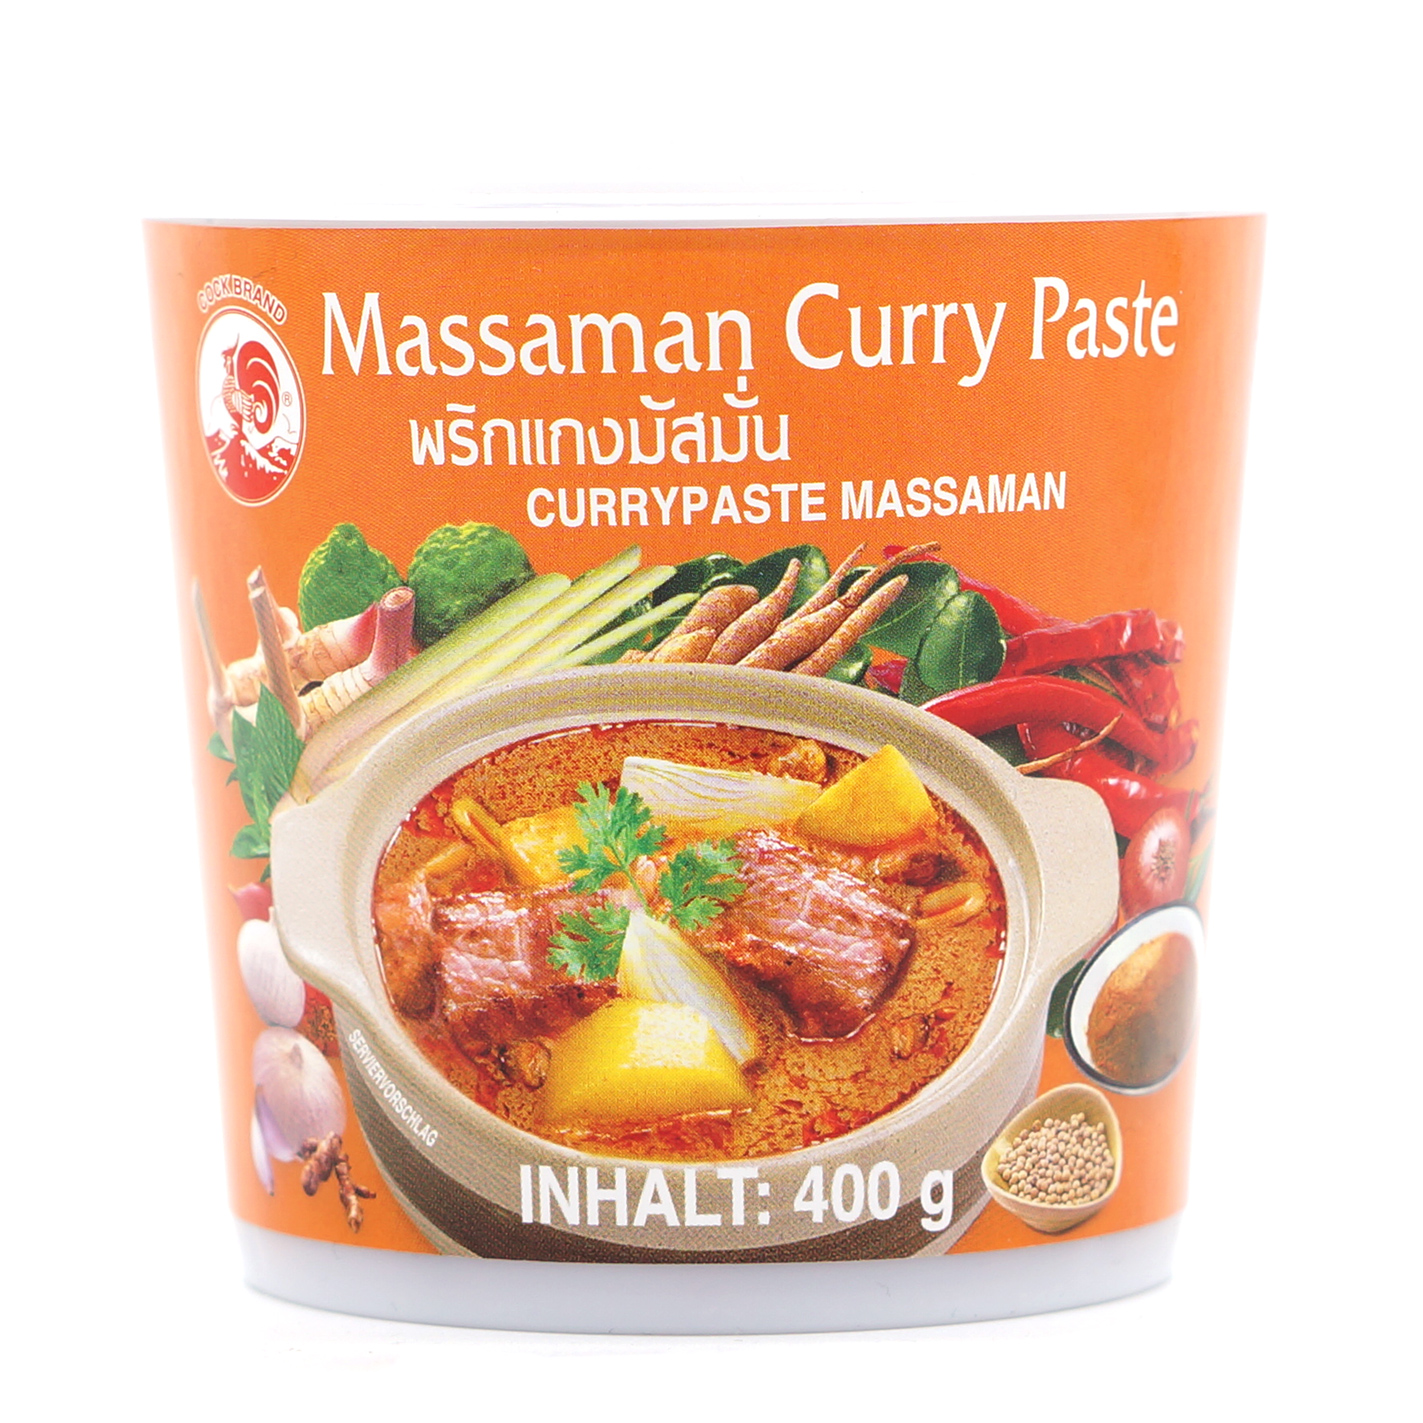 Massaman Currypaste - Hahnmarke - 400g